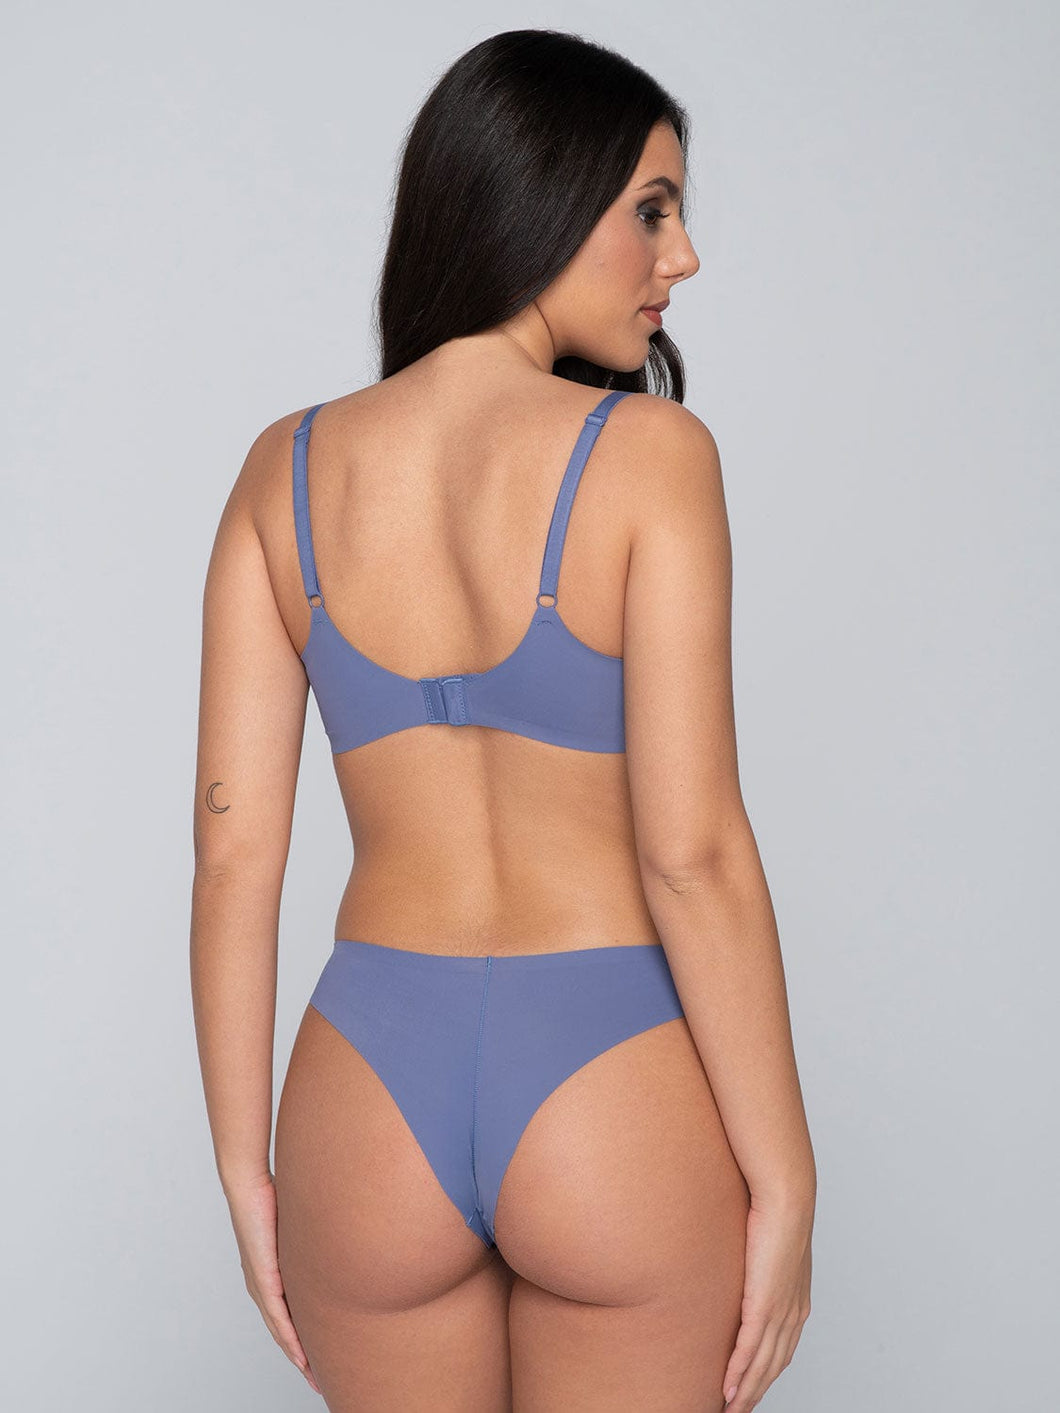 Γυναικείο Brazil Everywear Blue Luna Splendida 25100 | evaunderwear